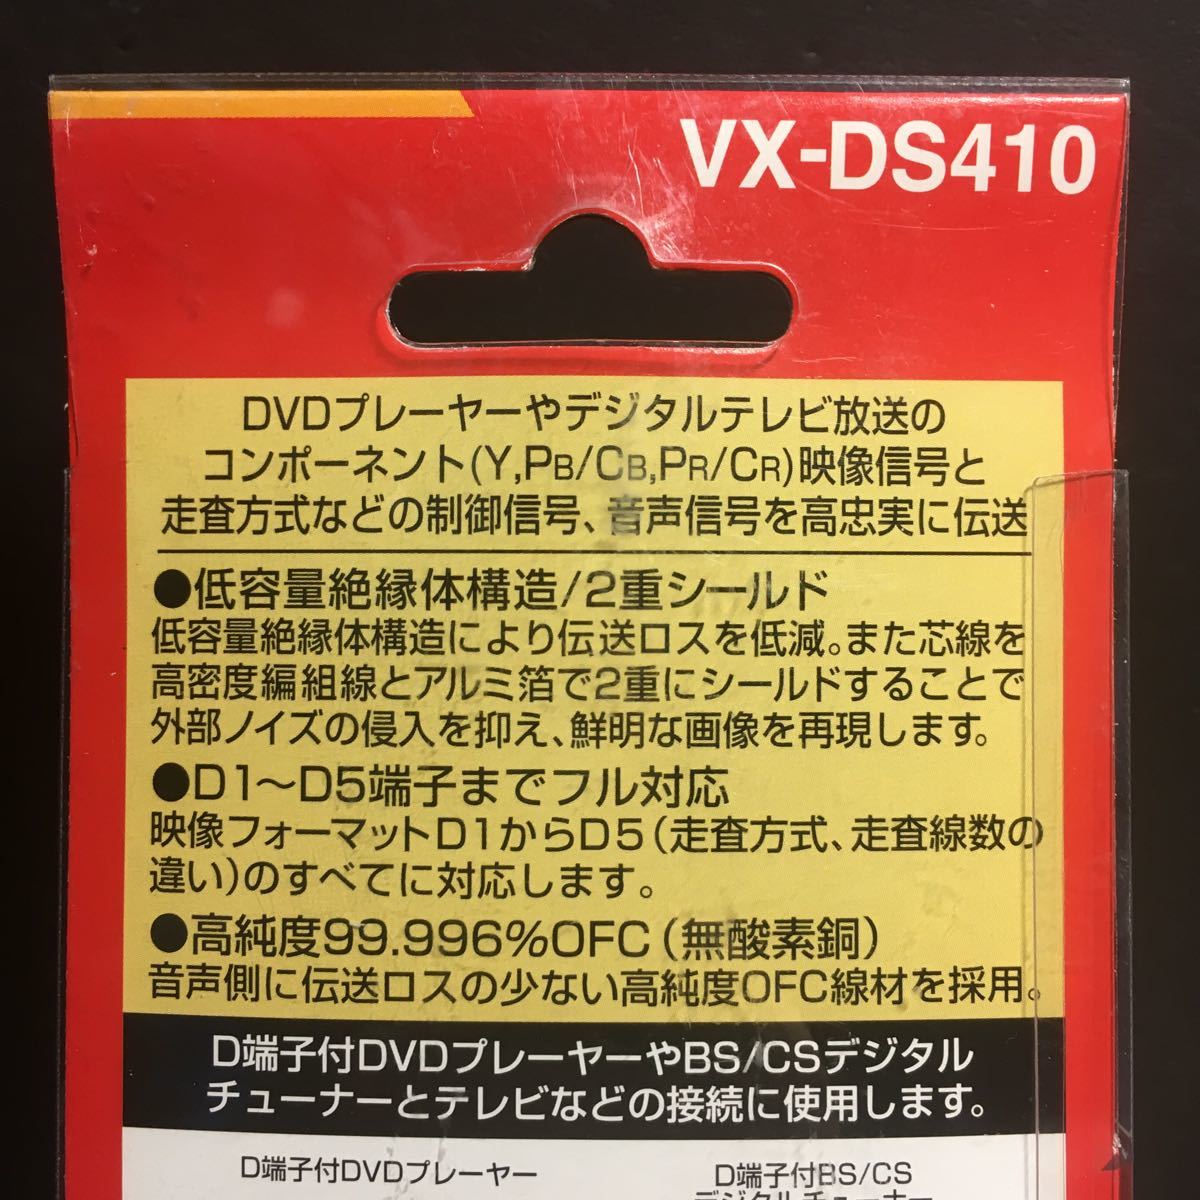  новый товар Victor *JVC звук кабель имеется D терминал код 1m VX-DS410 OFC нет кислород медь 24 позолоченный штекер обычная цена =4752 иен стоимость доставки 350 иен ~